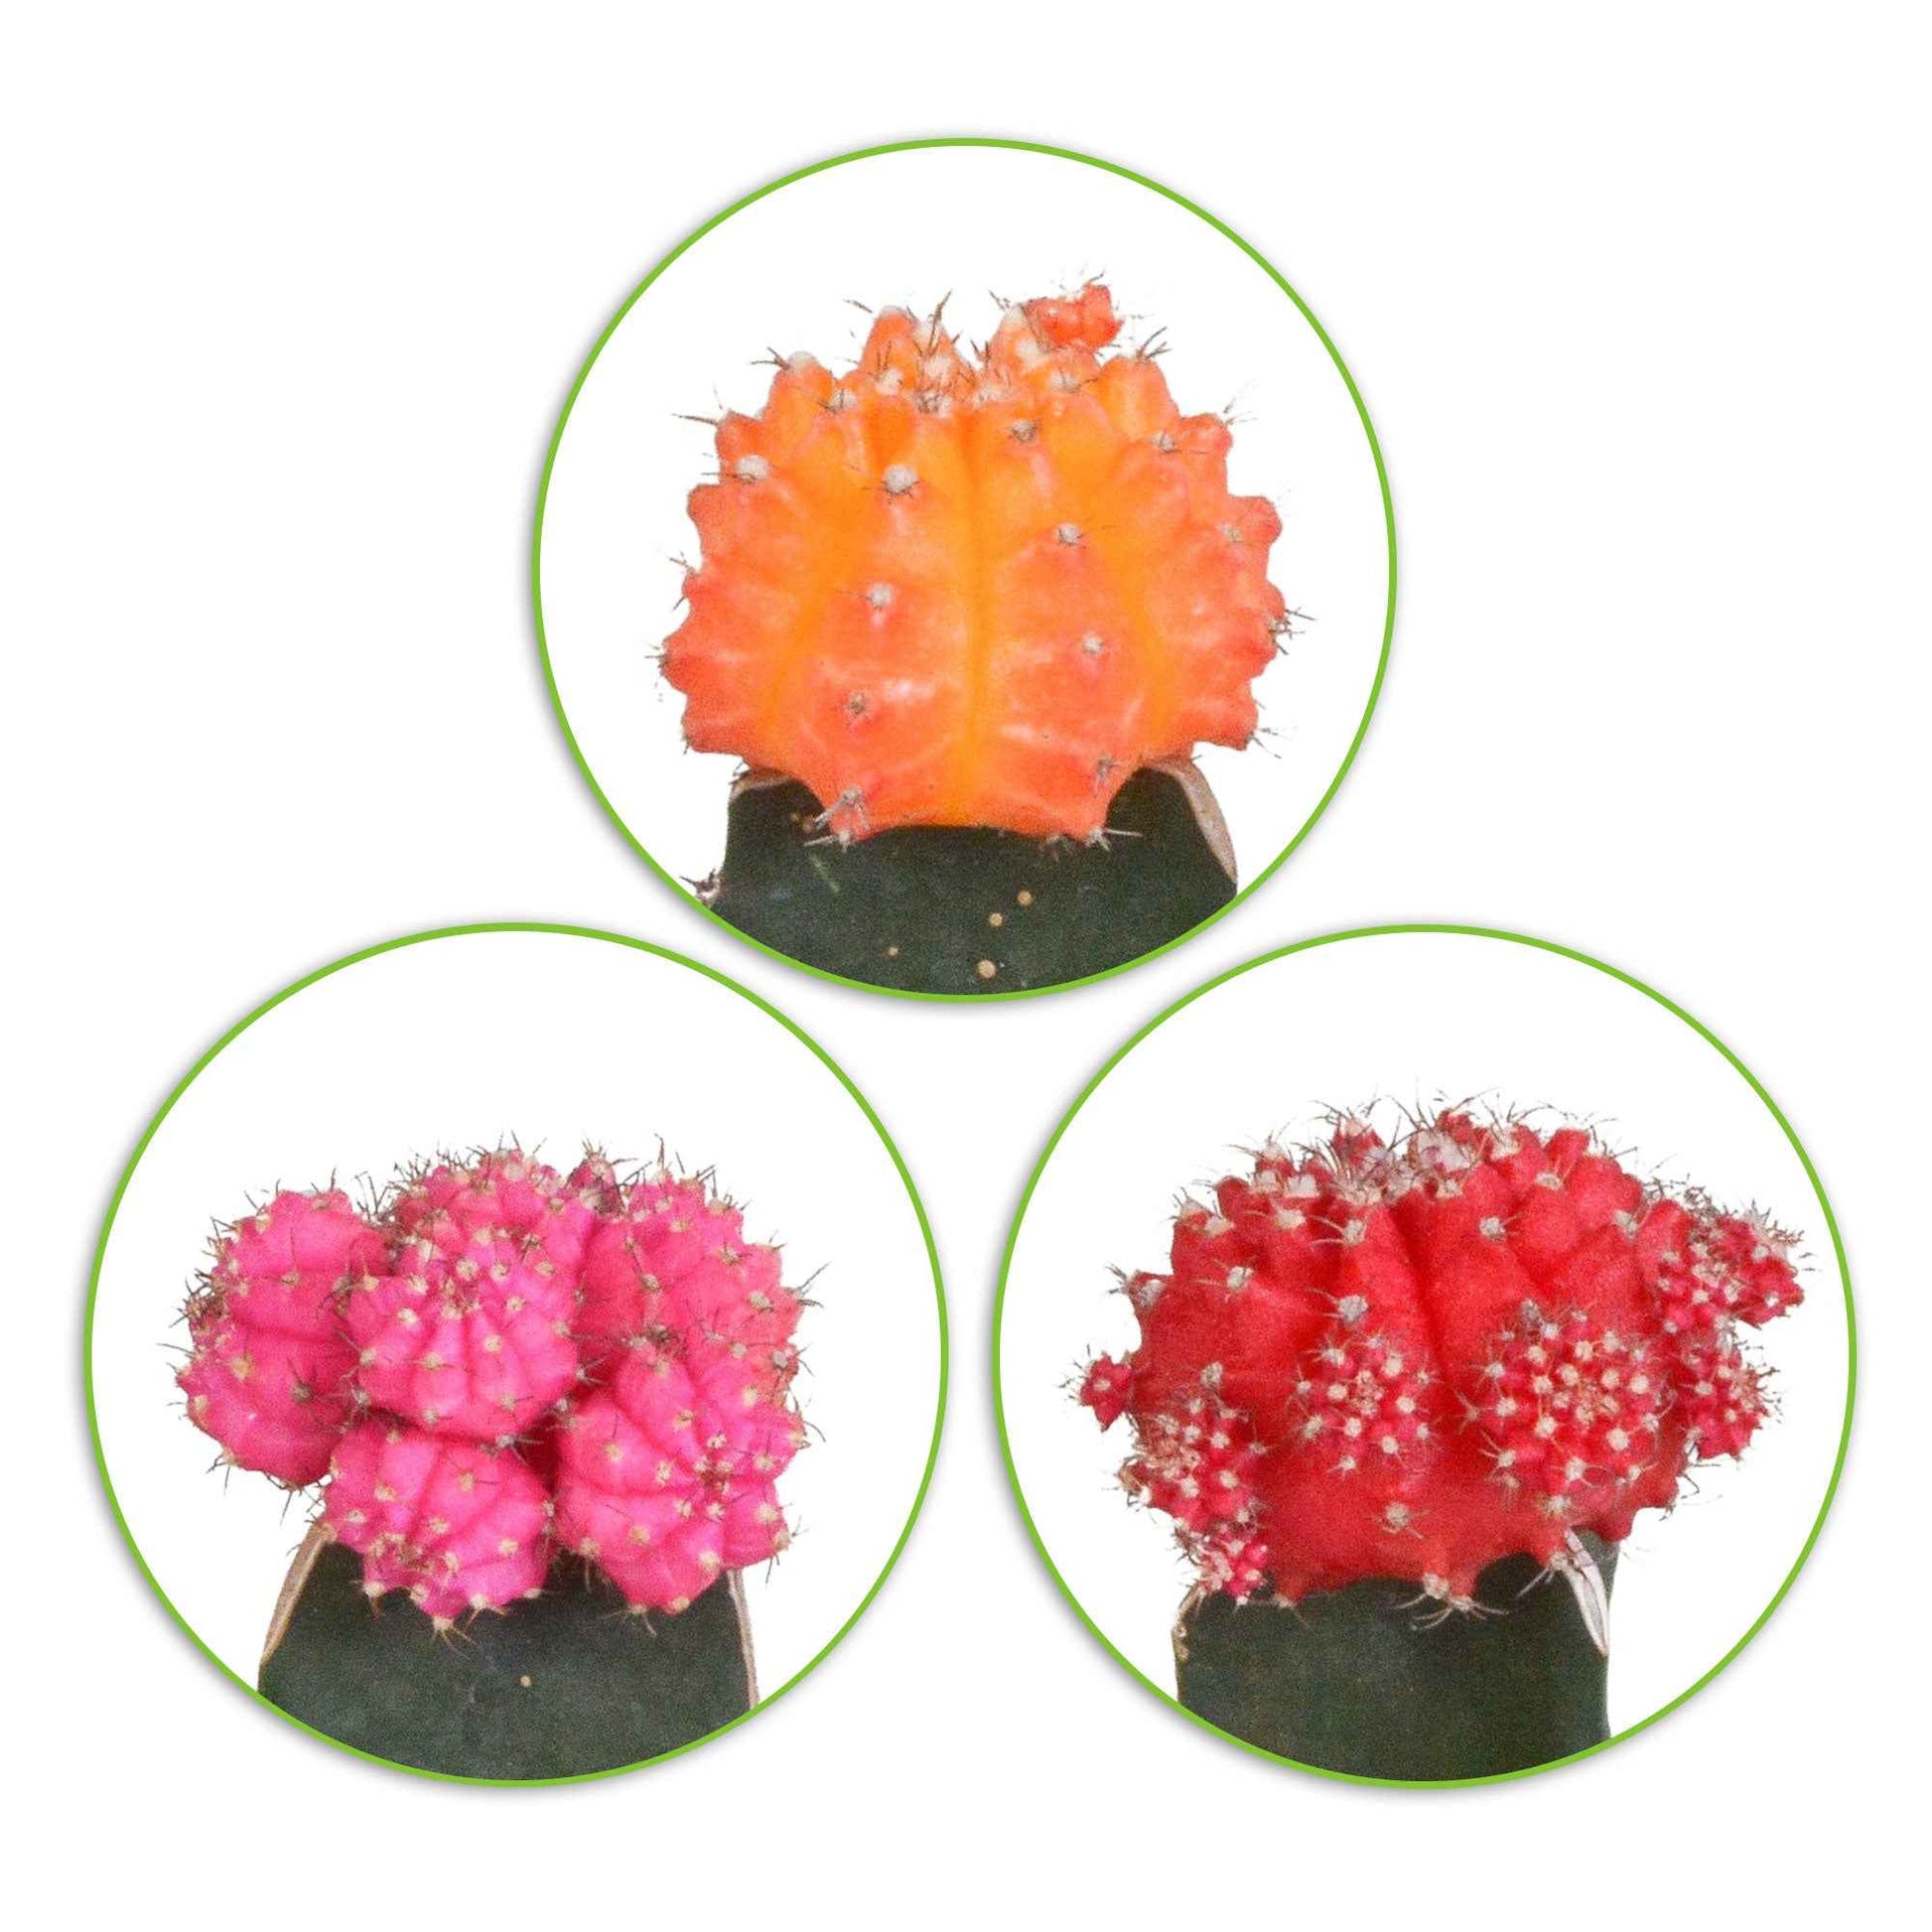 ontsmettingsmiddel overdrijven als Koop nu kamerplant 3 Cactus Gymnocalycium mihanovichii Rood-Oranje-Roze |  Bakker.com